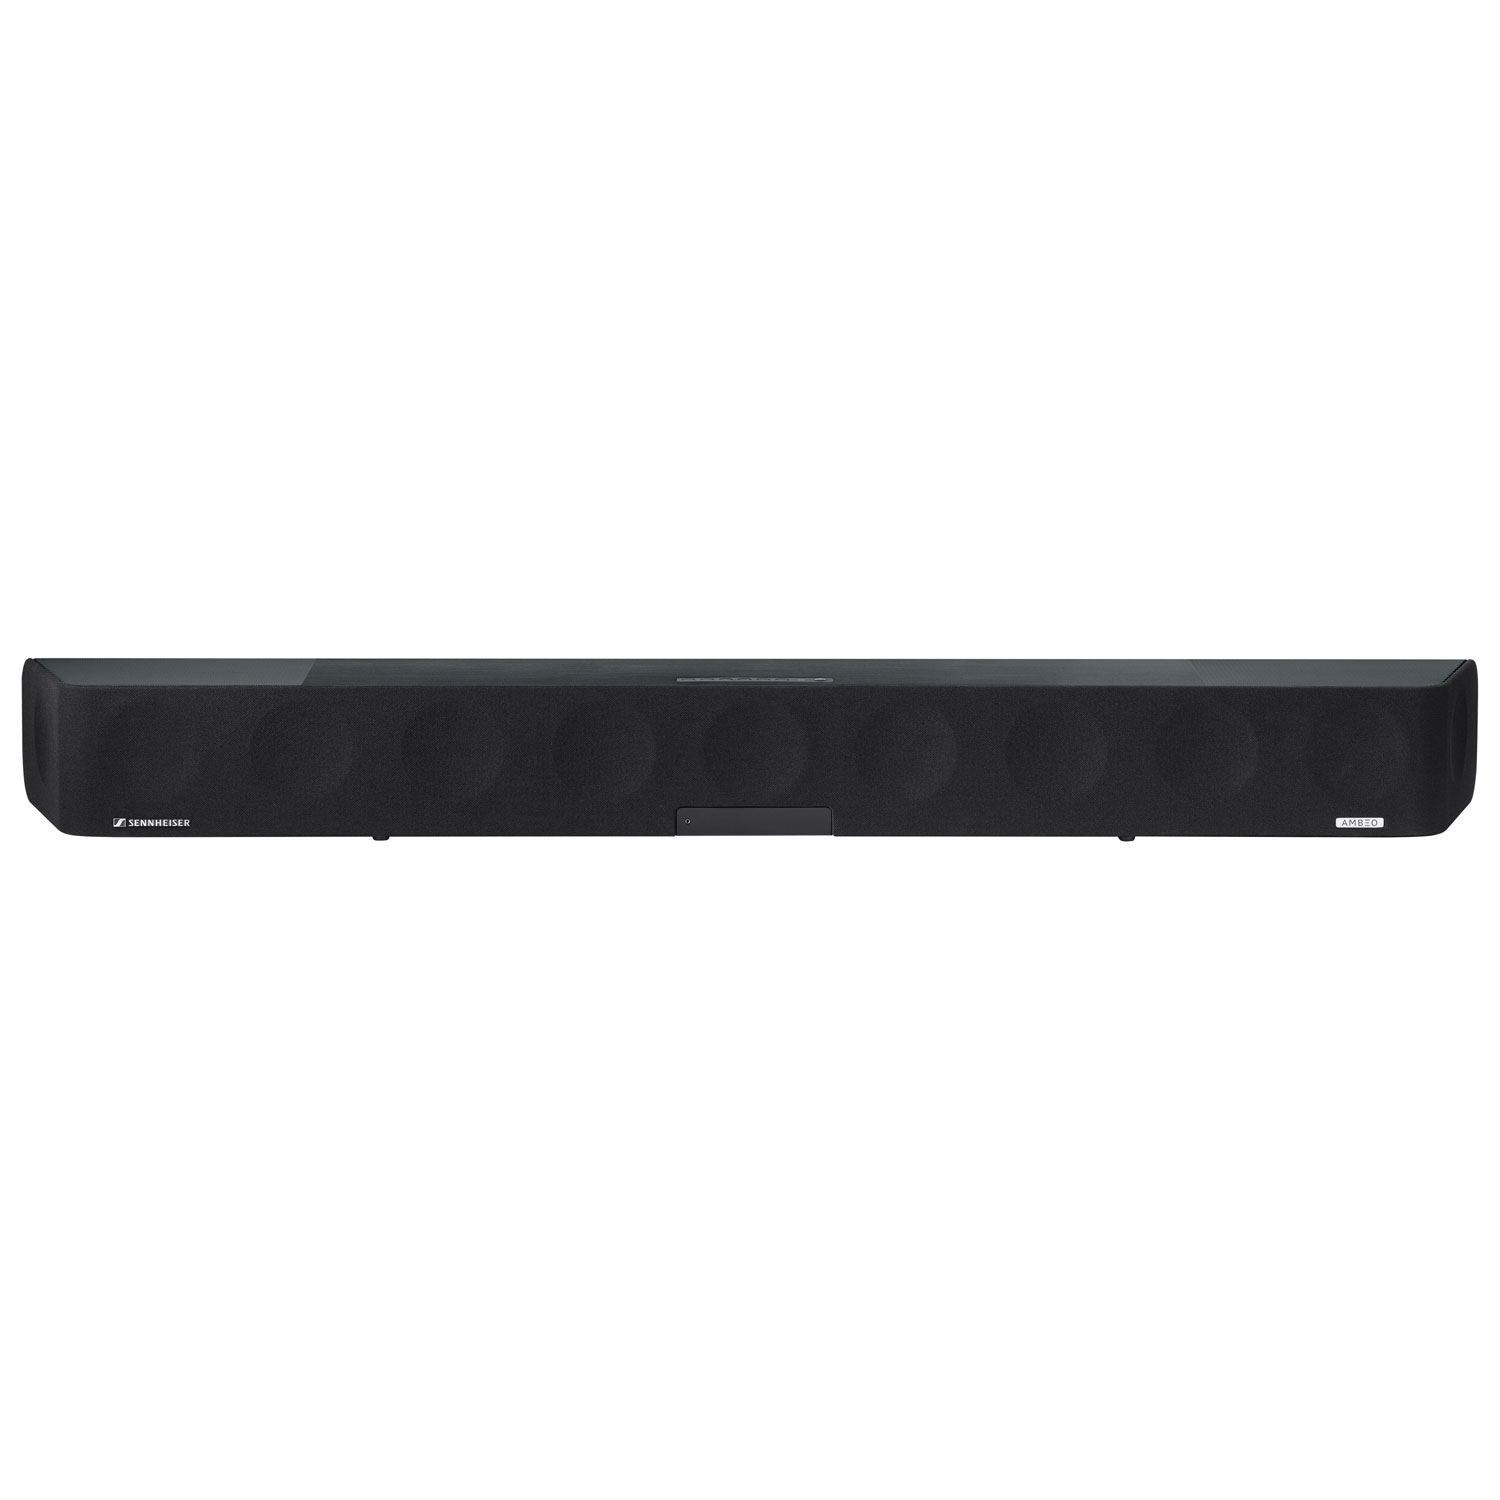 Sennheiser Ambeo Max 500-Watt 5.1.4 Channel Dolby Atmos Sound Bar